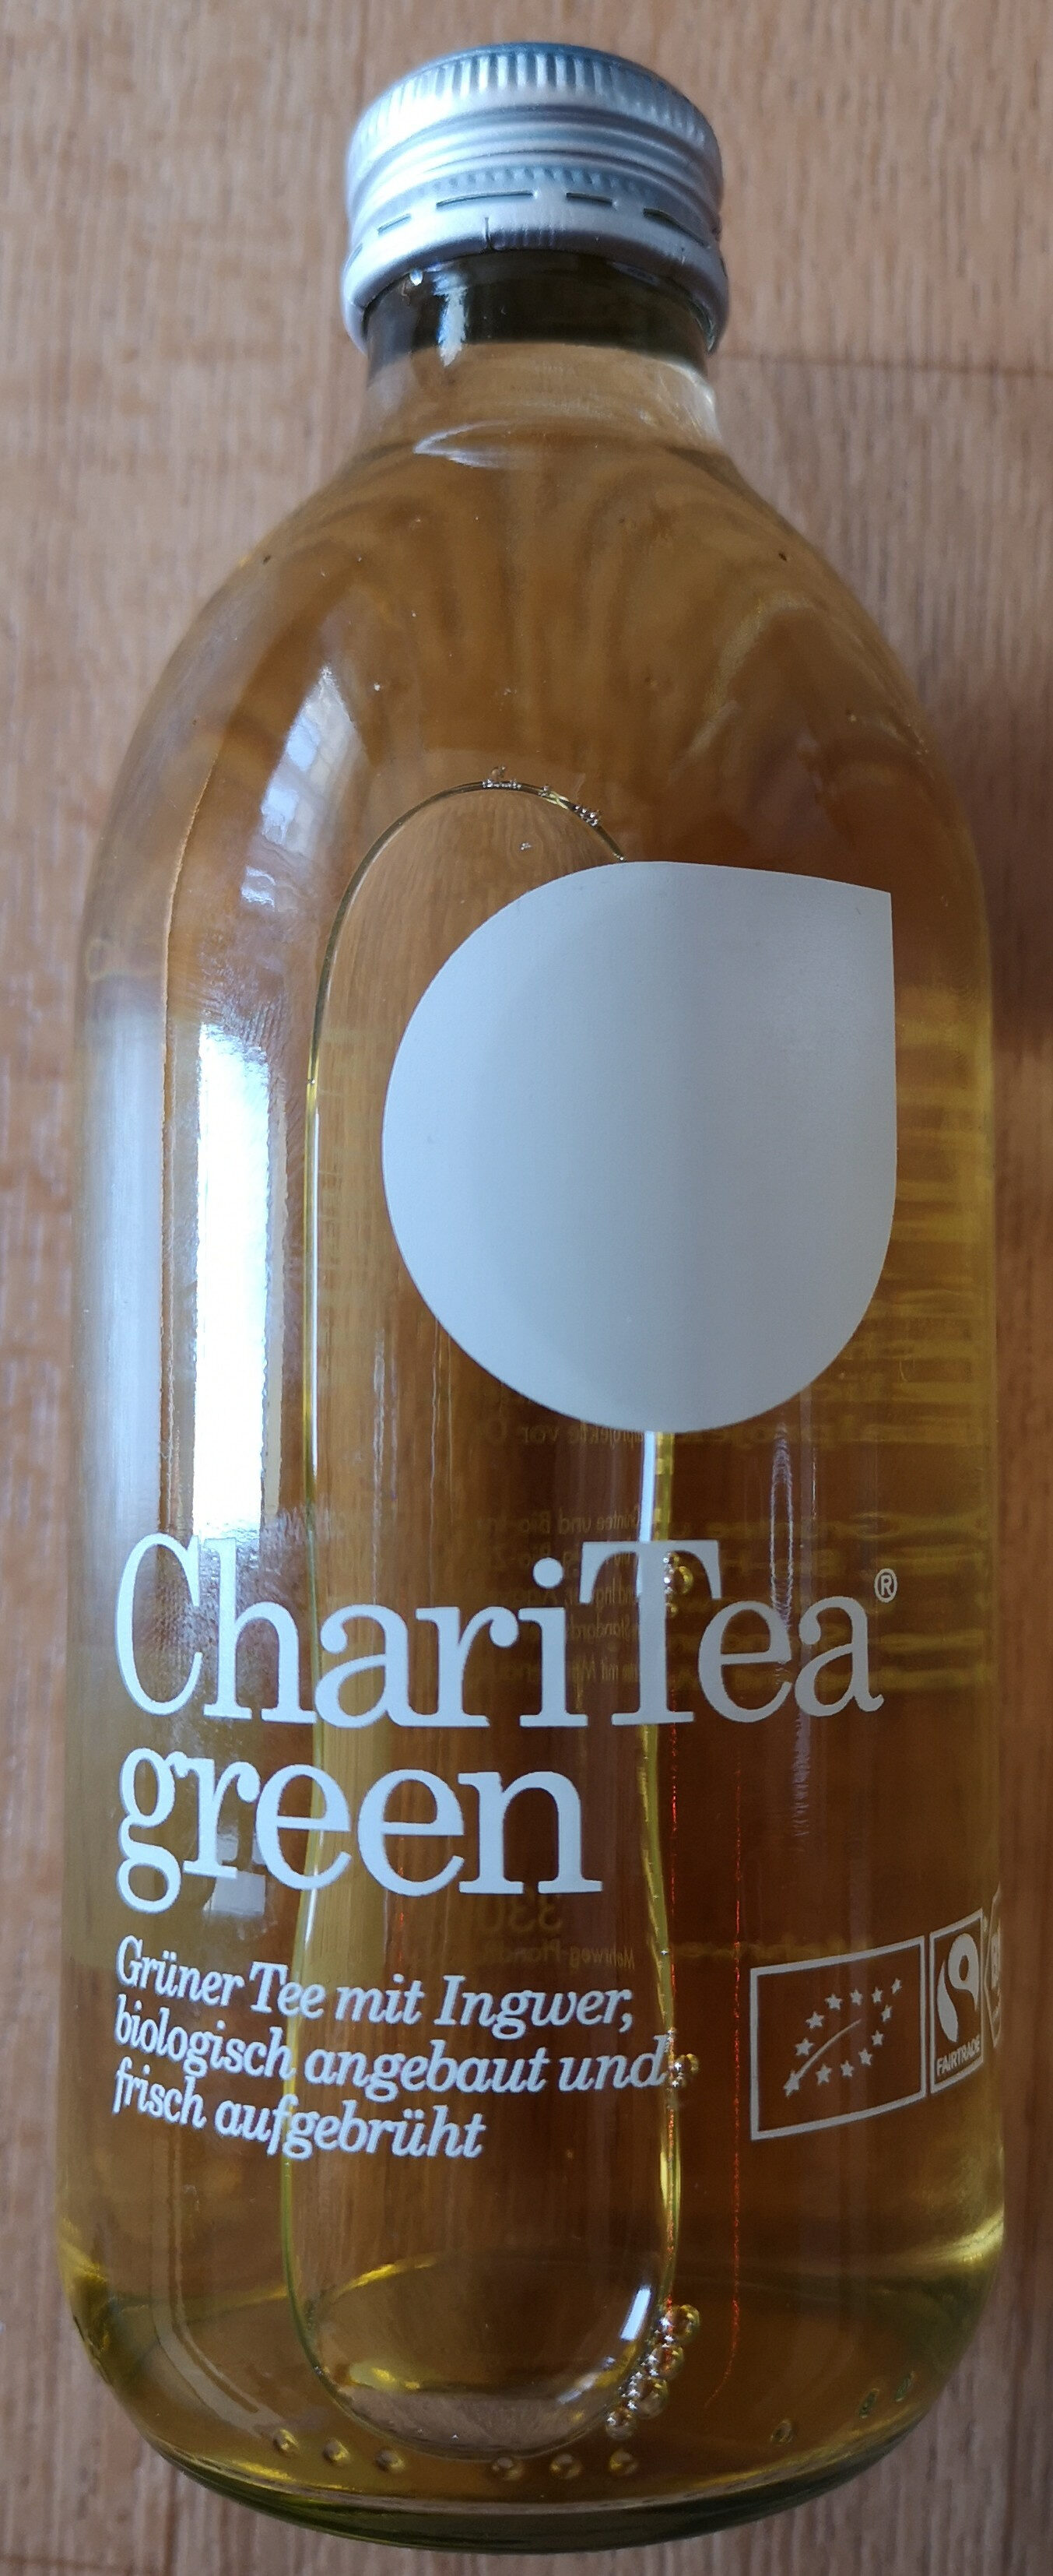 ChariTea® green - Product - de